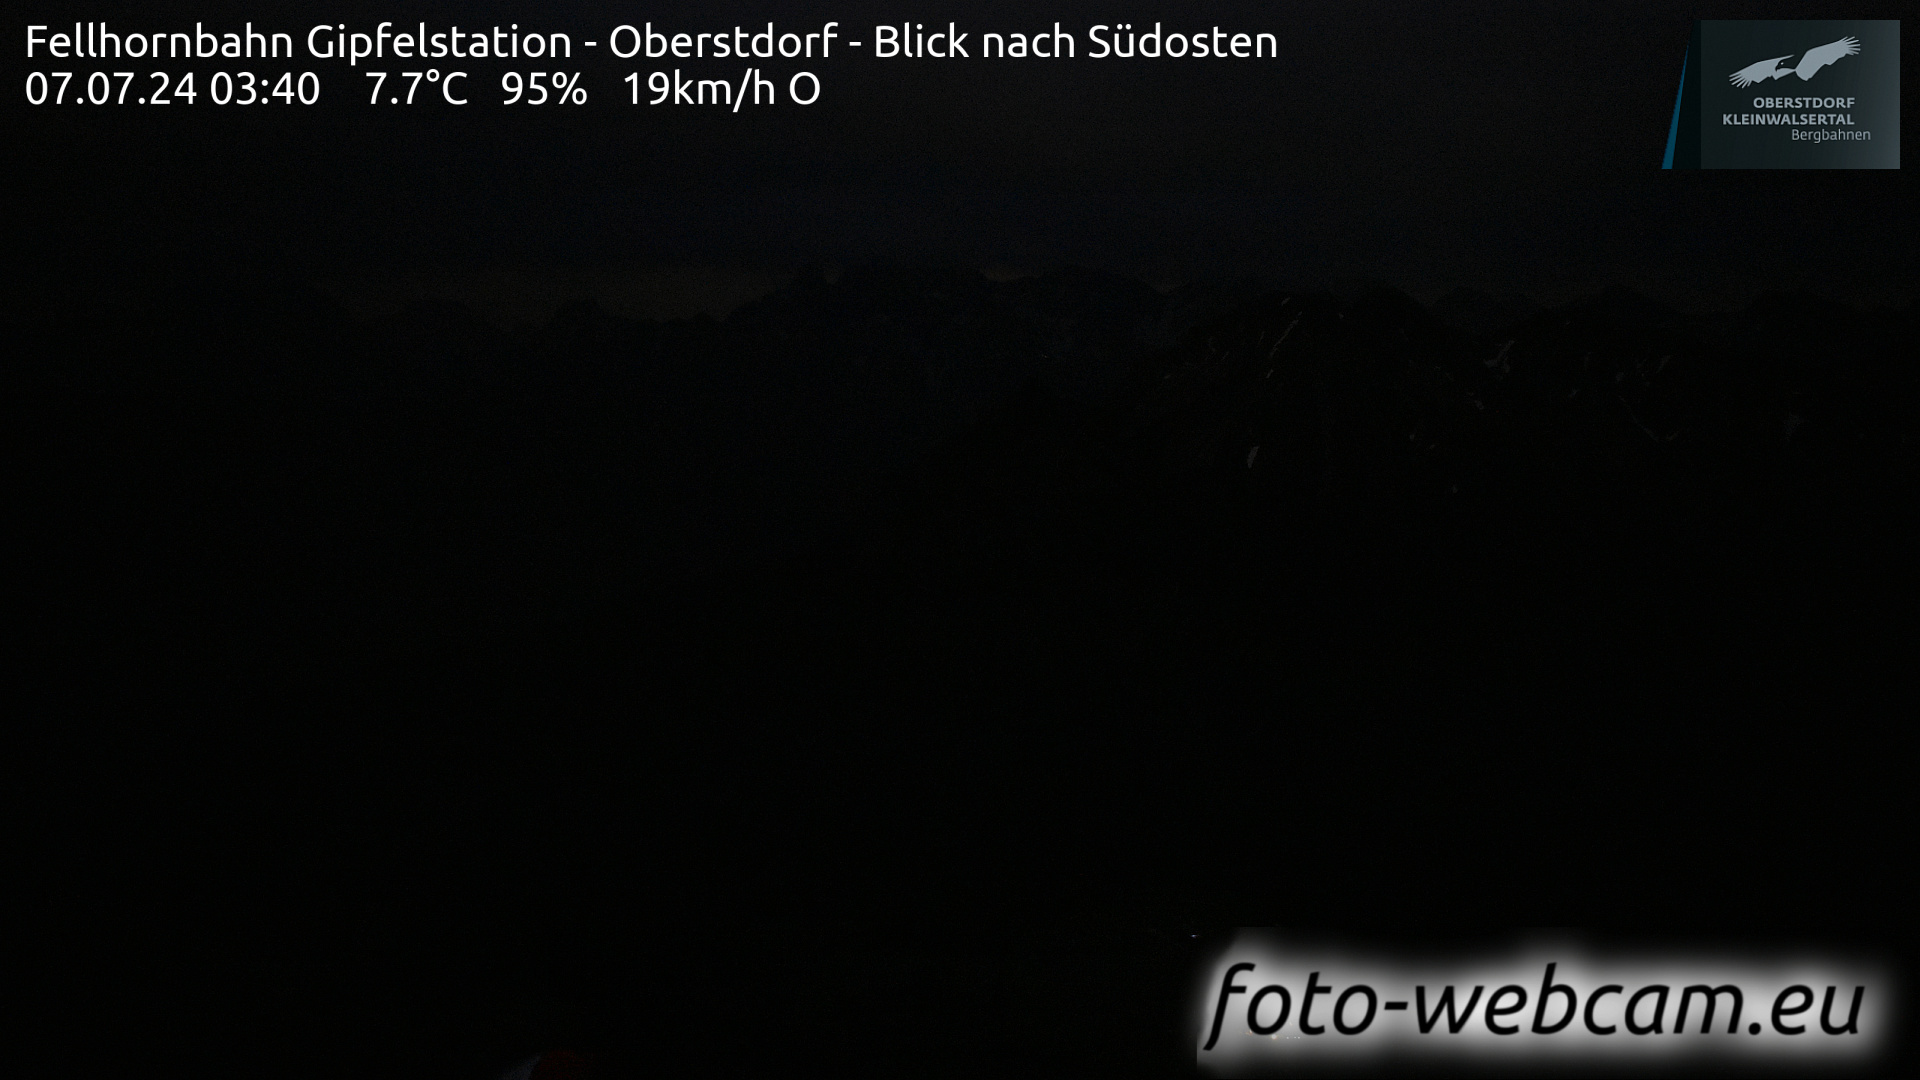 Oberstdorf Sa. 03:49